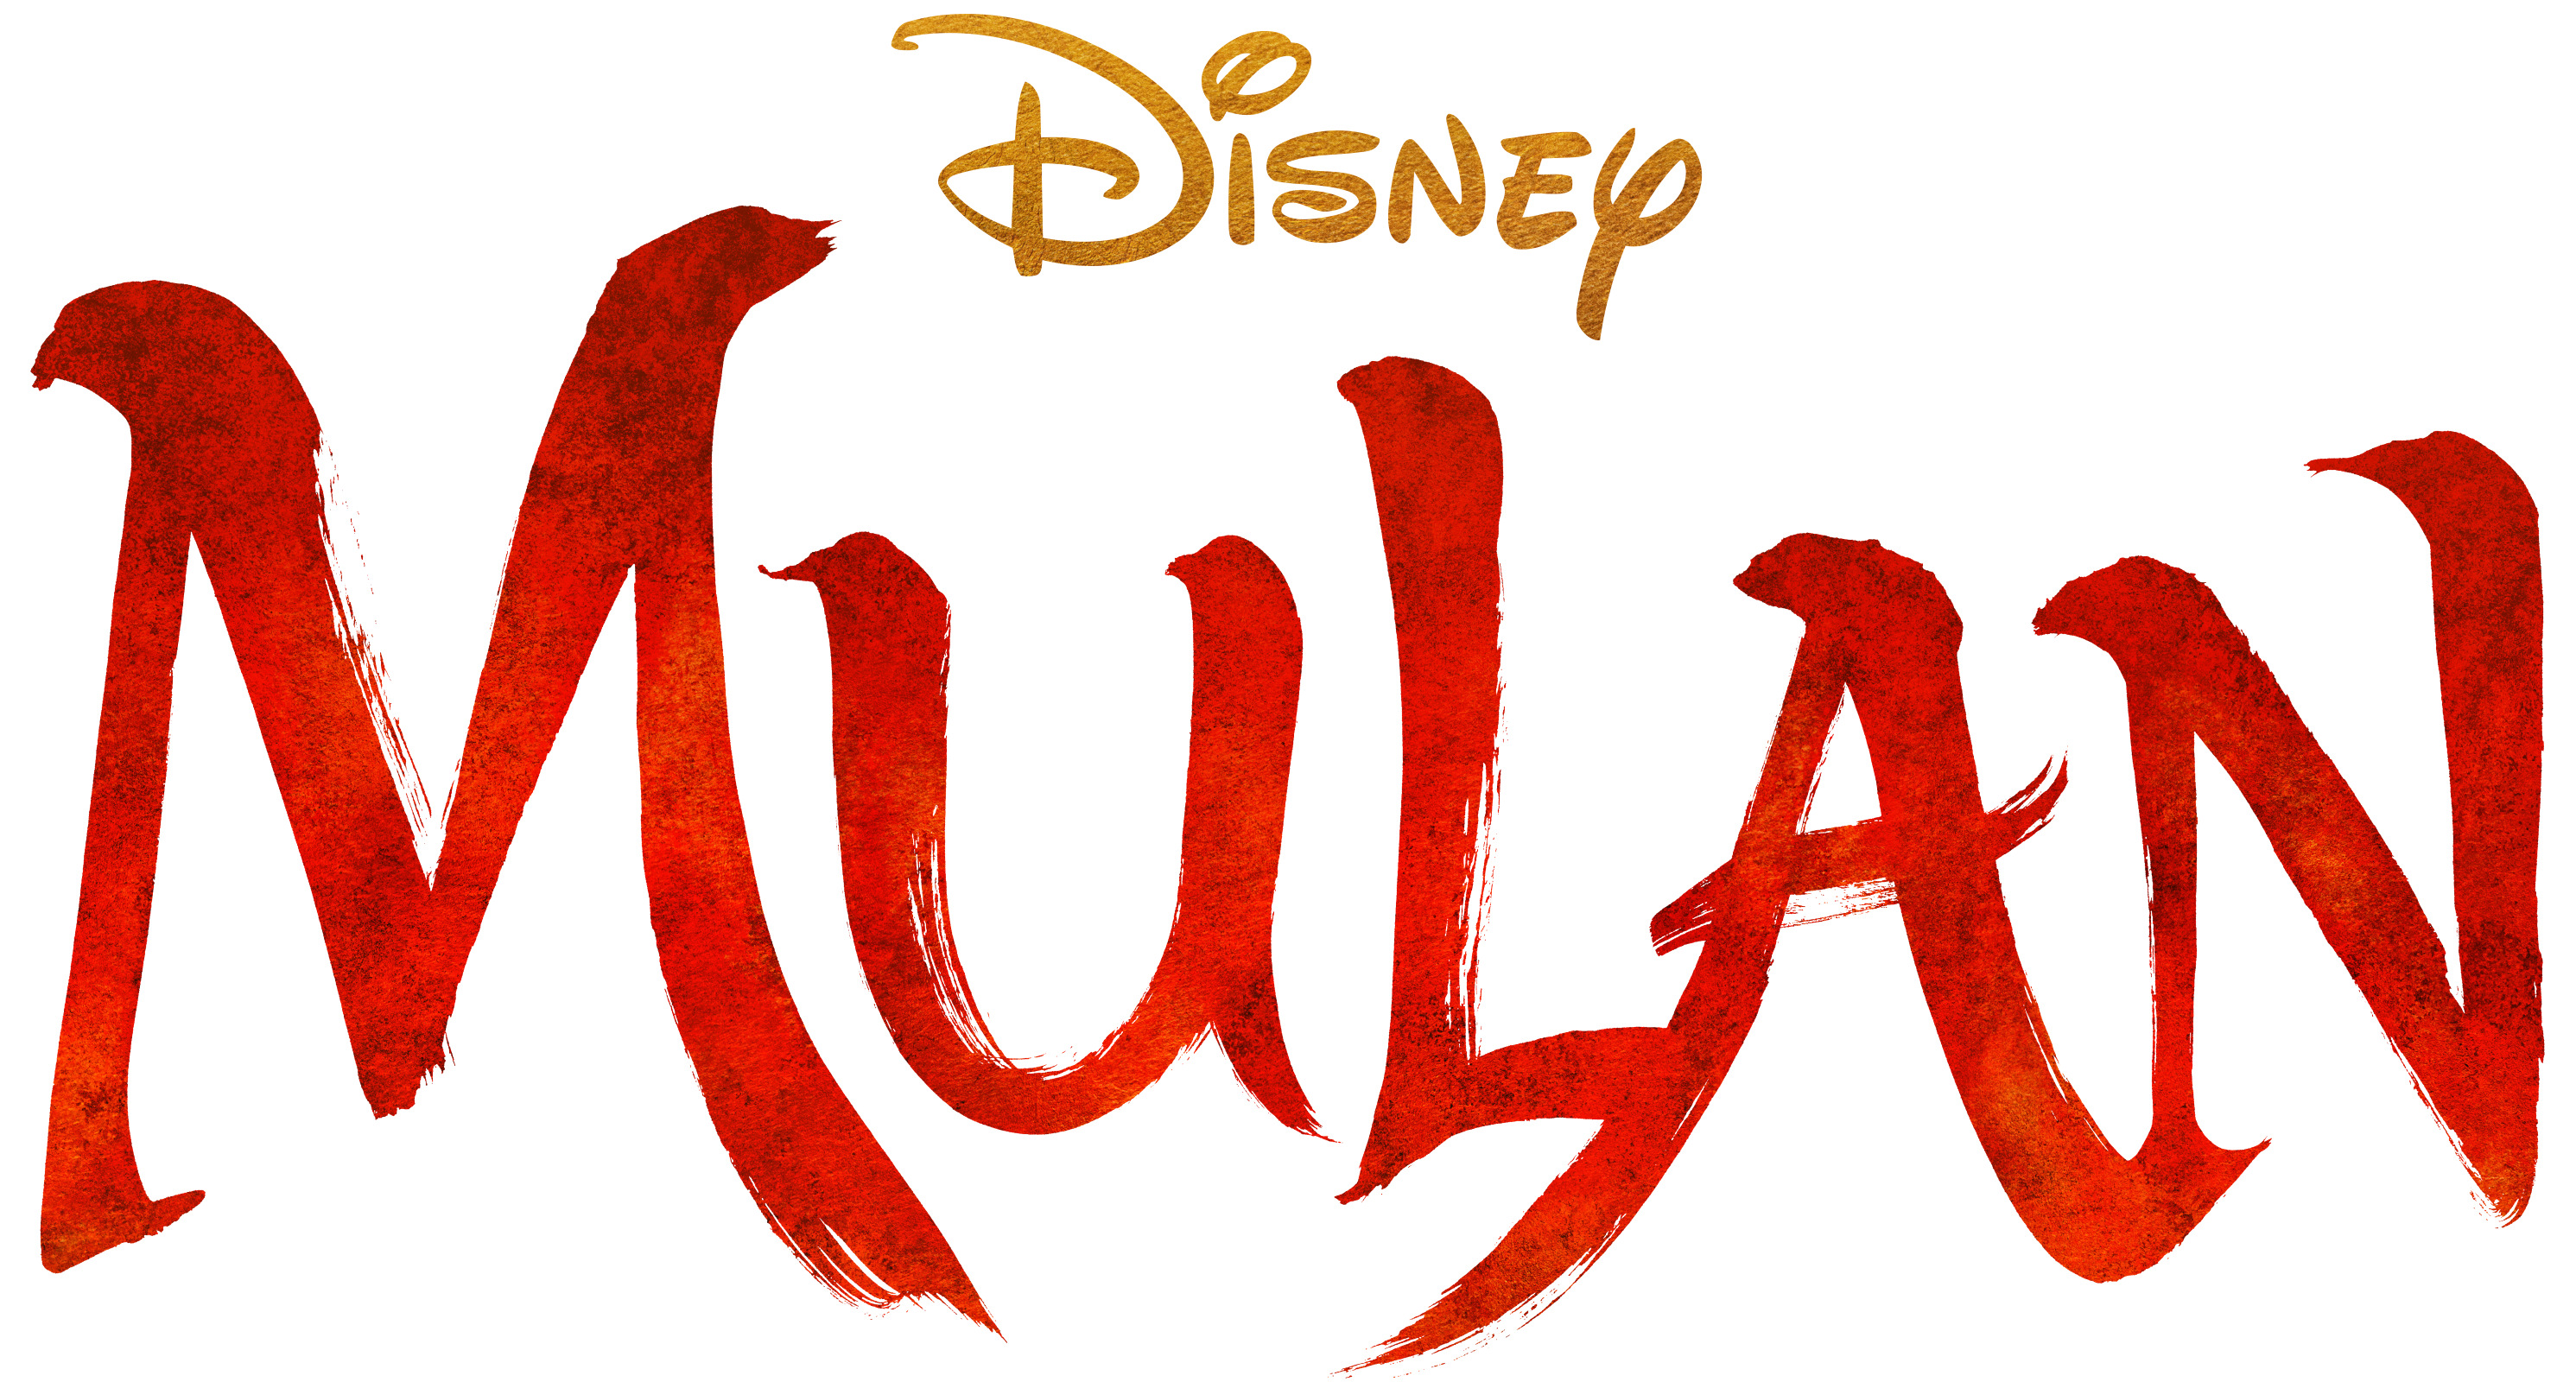 Image showing the Mulan title art reading Disney Mulan